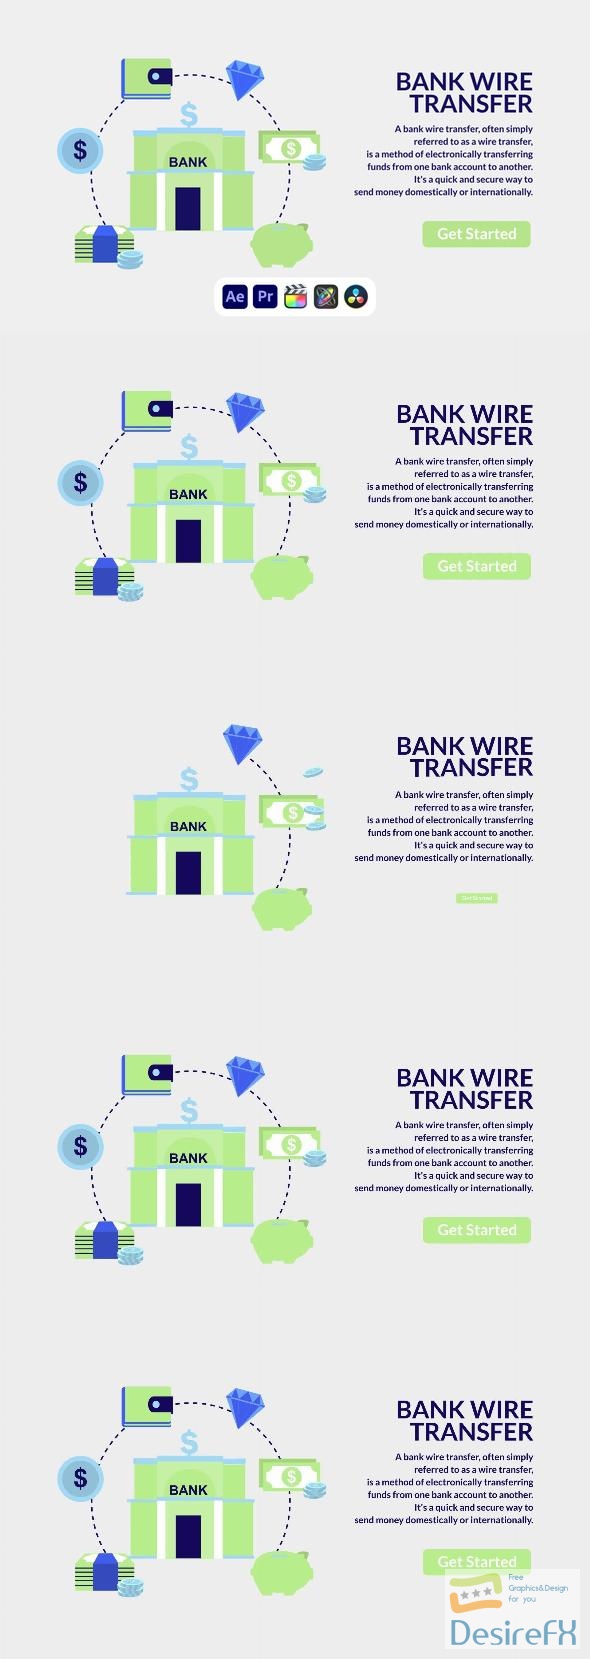 VideoHive Bank Wire Transfer Design Concept 50690325